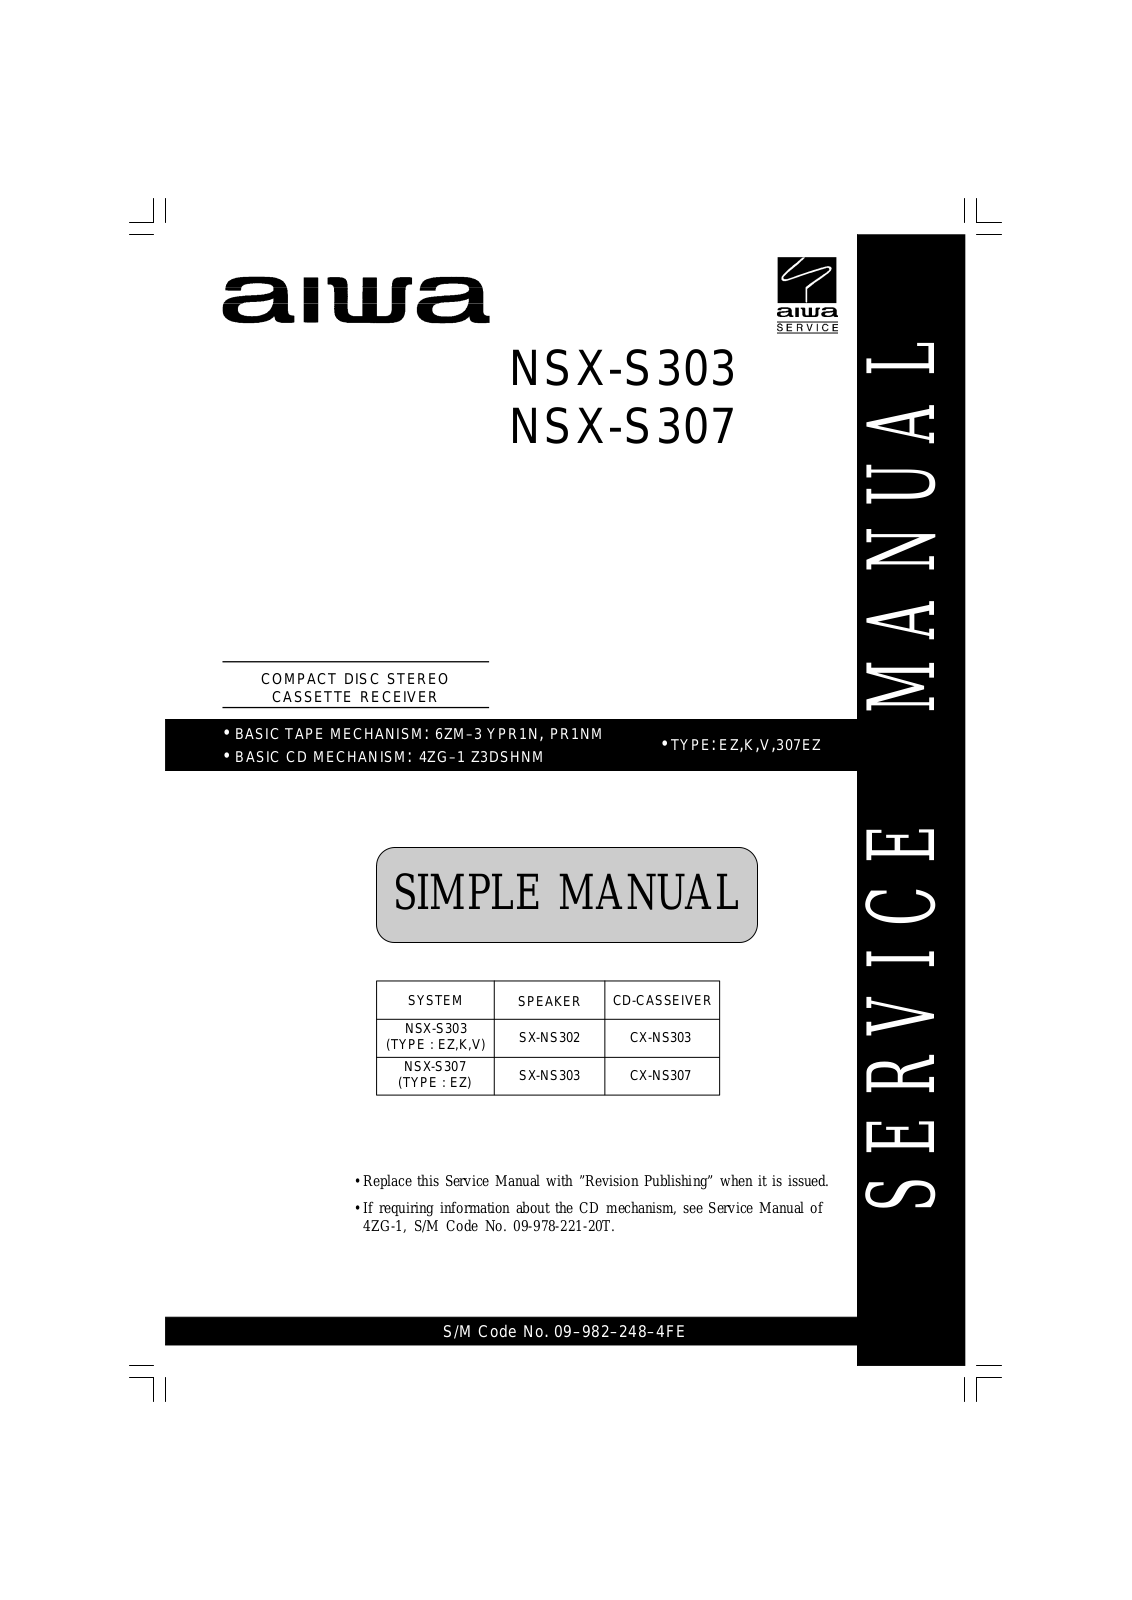 Aiwa NSXS-303, NSXS-307 Service manual